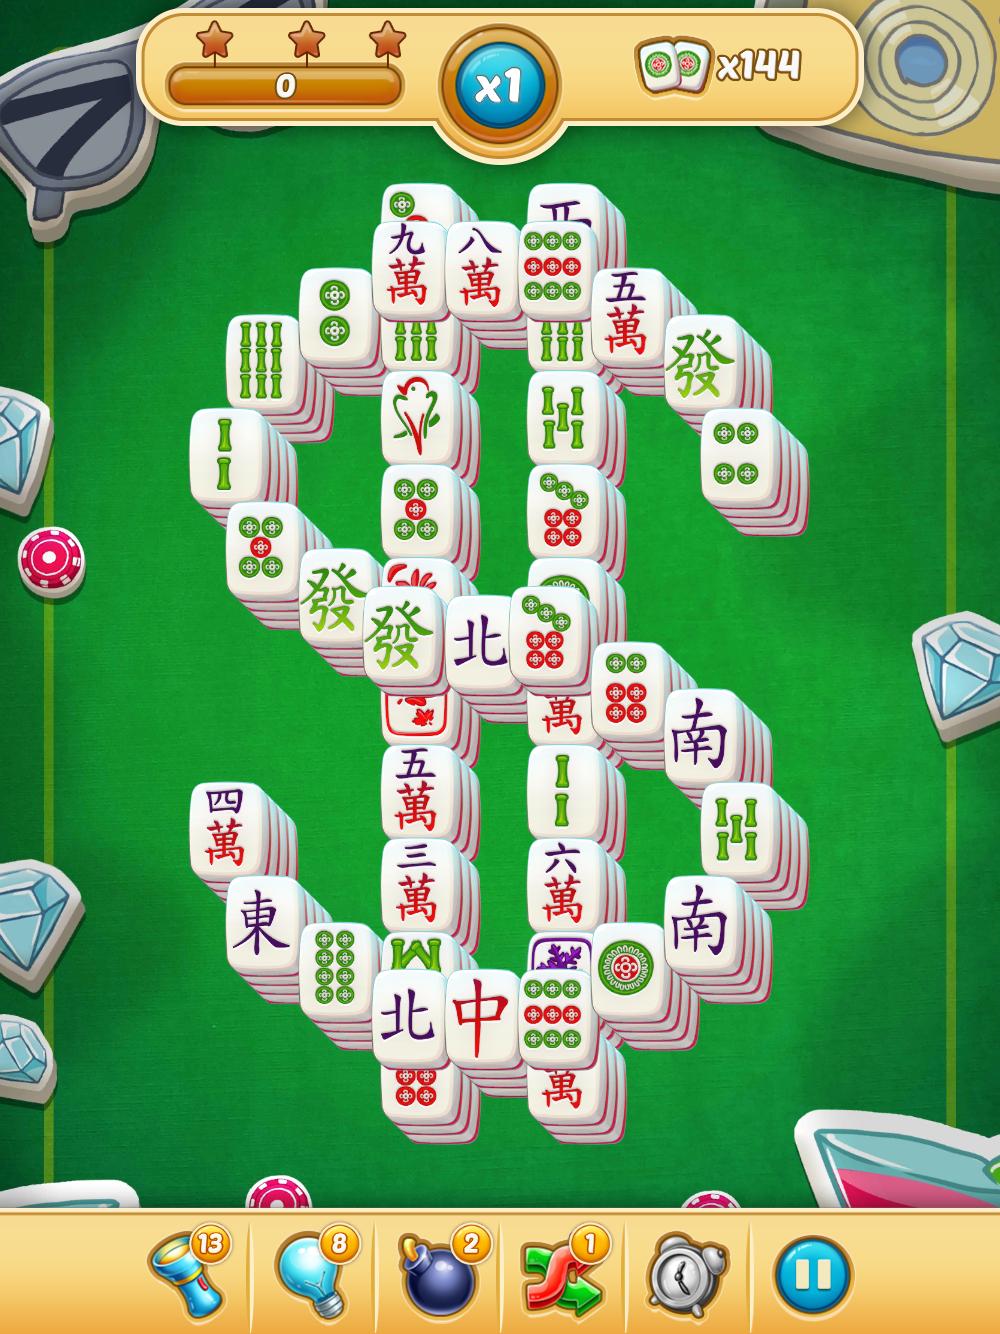 Mahjong City Tours Free Mahjong Classic Game 40.1.0 Screenshot 23